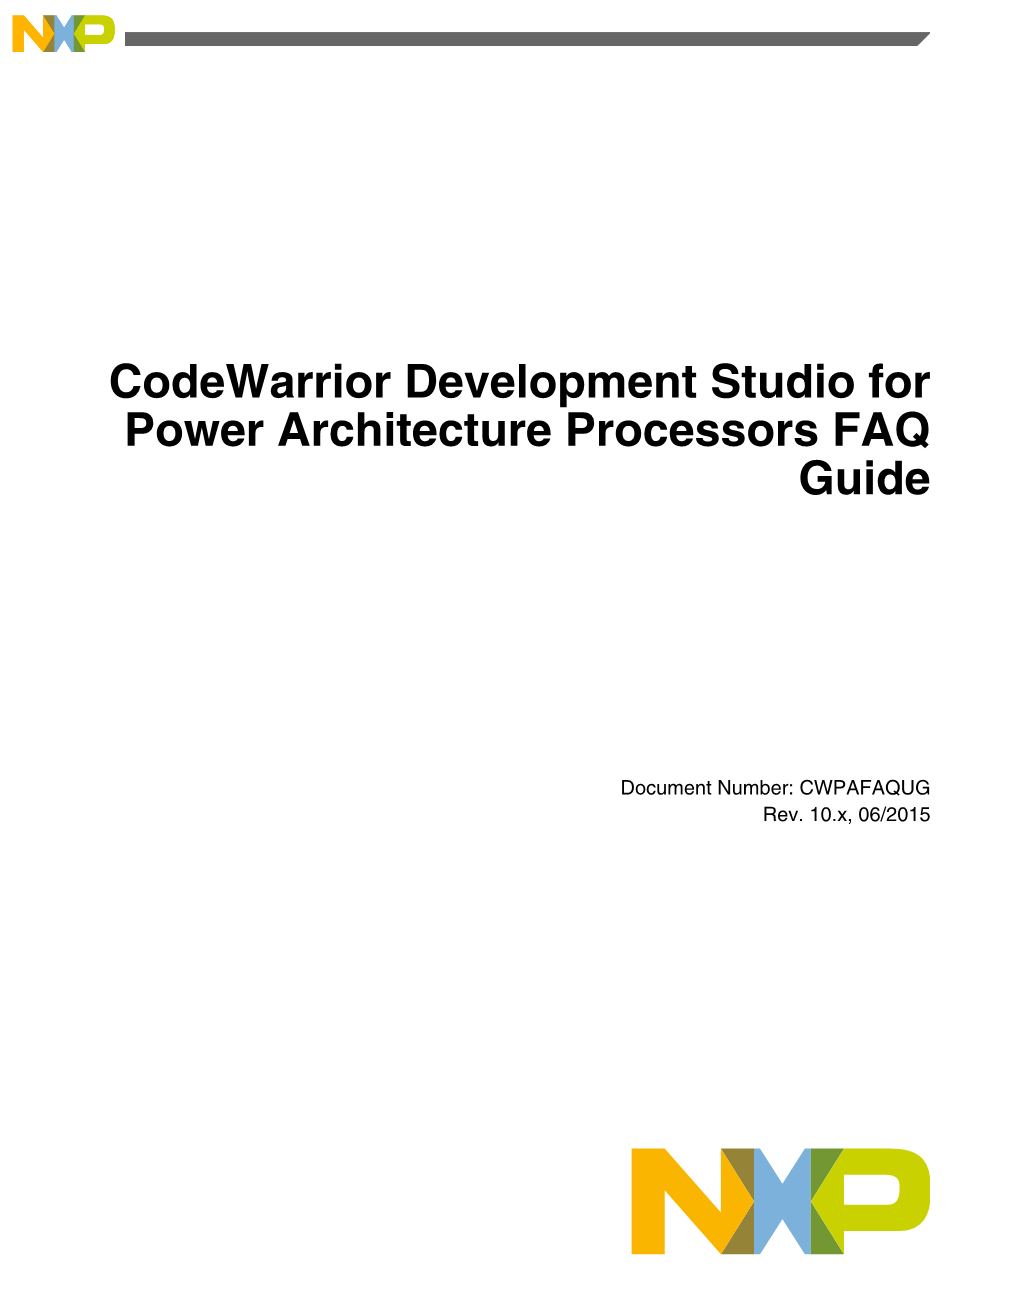 Codewarrior Development Studio for Power Architecture Processors FAQ Guide